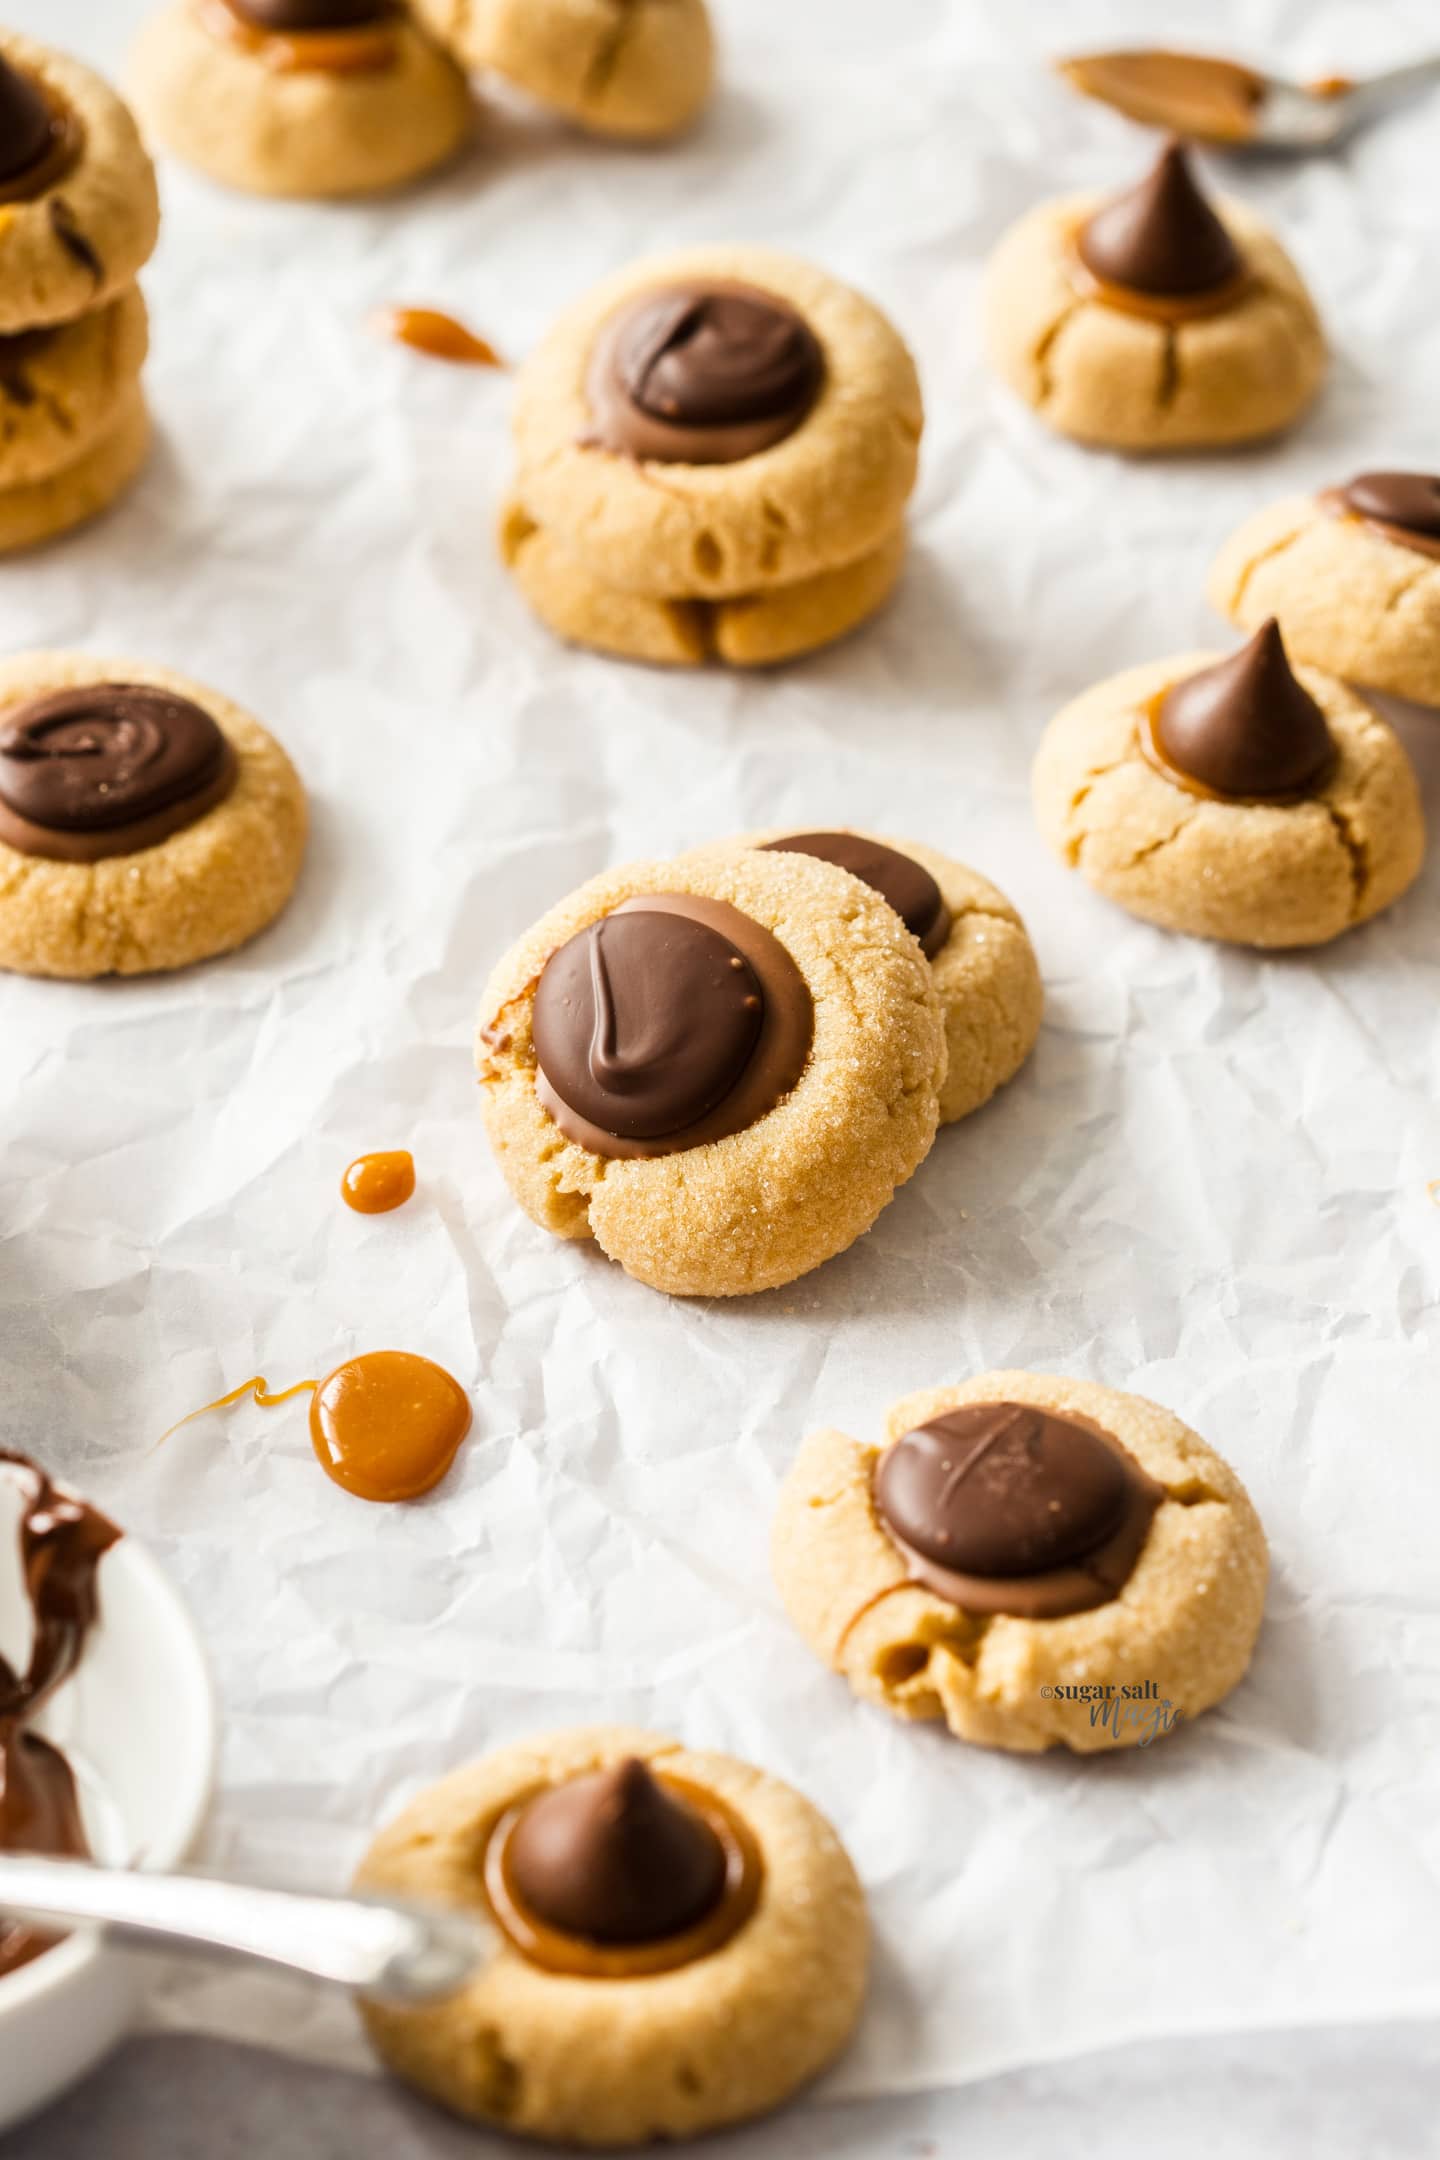 A batch of caramel peanut butter thumbprint cookies on a sheet of baking paper.